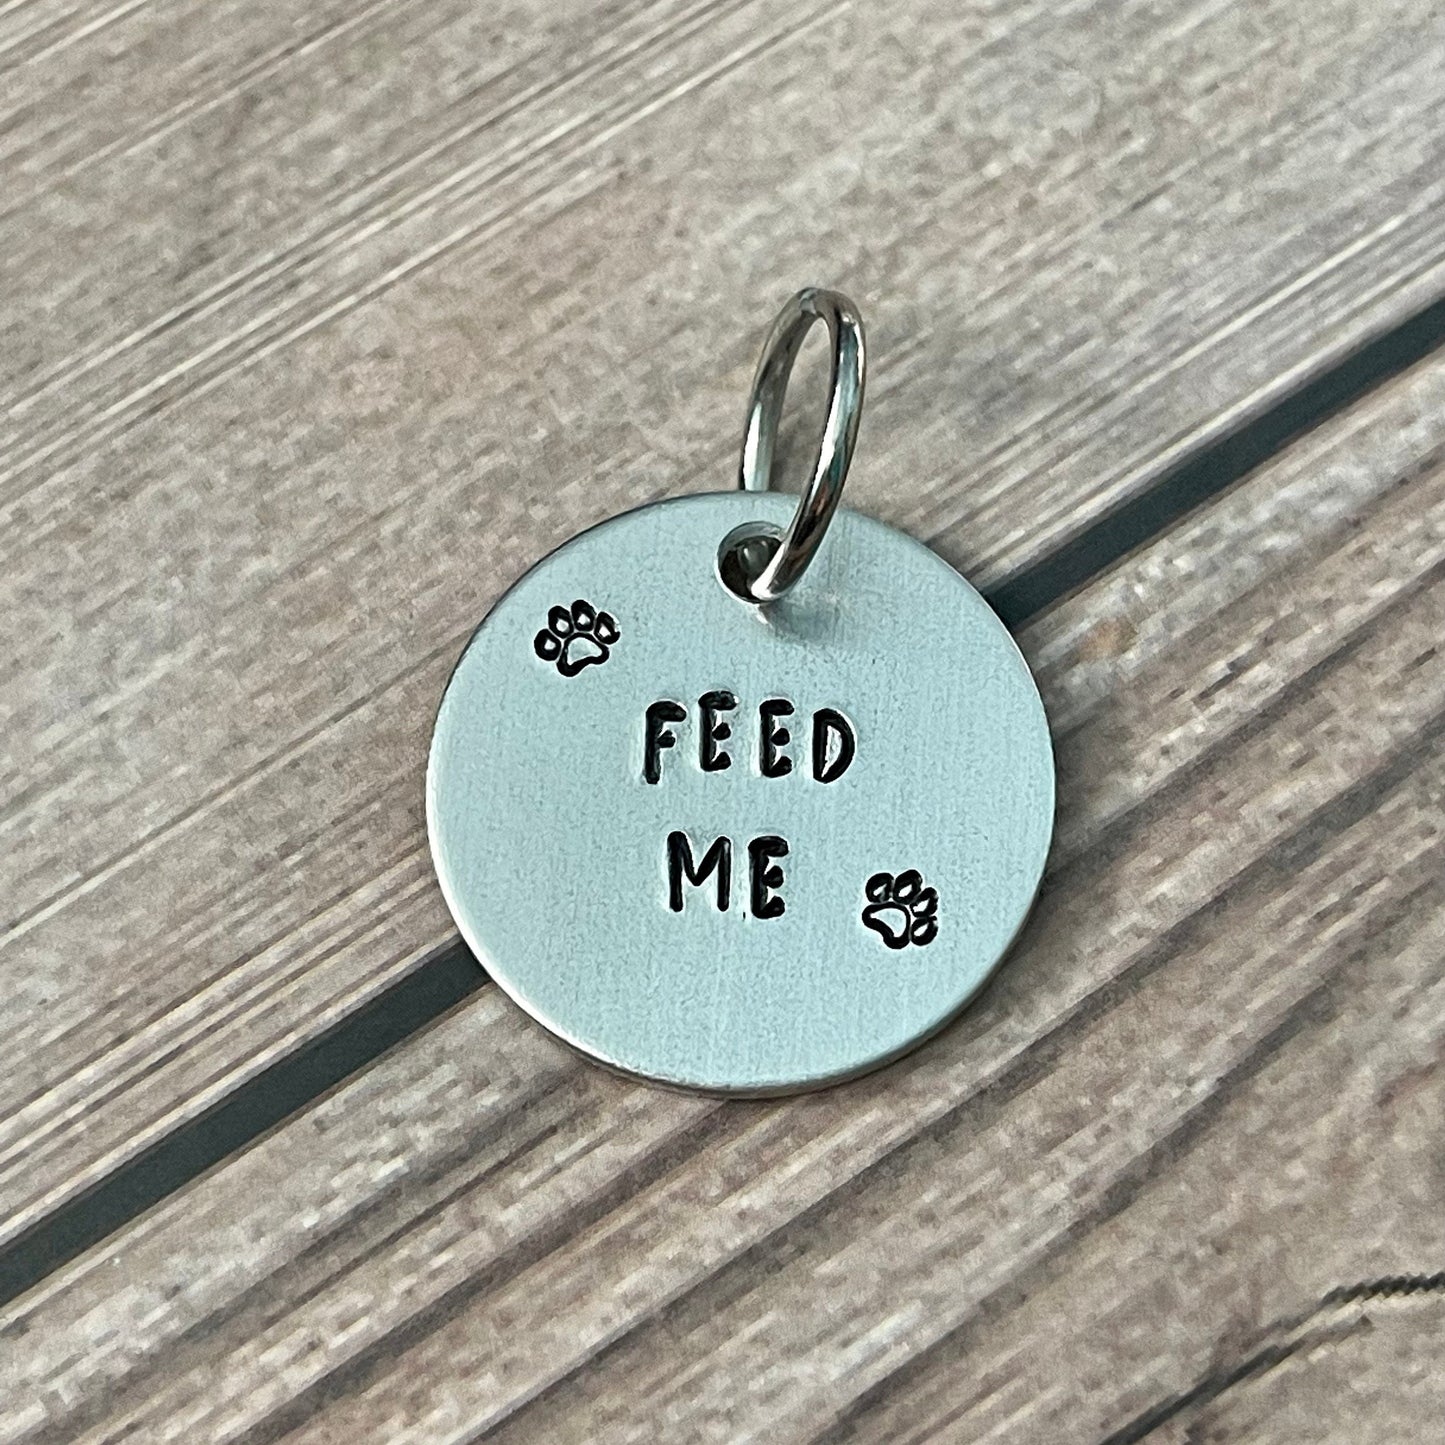 “FEED ME” Fun Tag